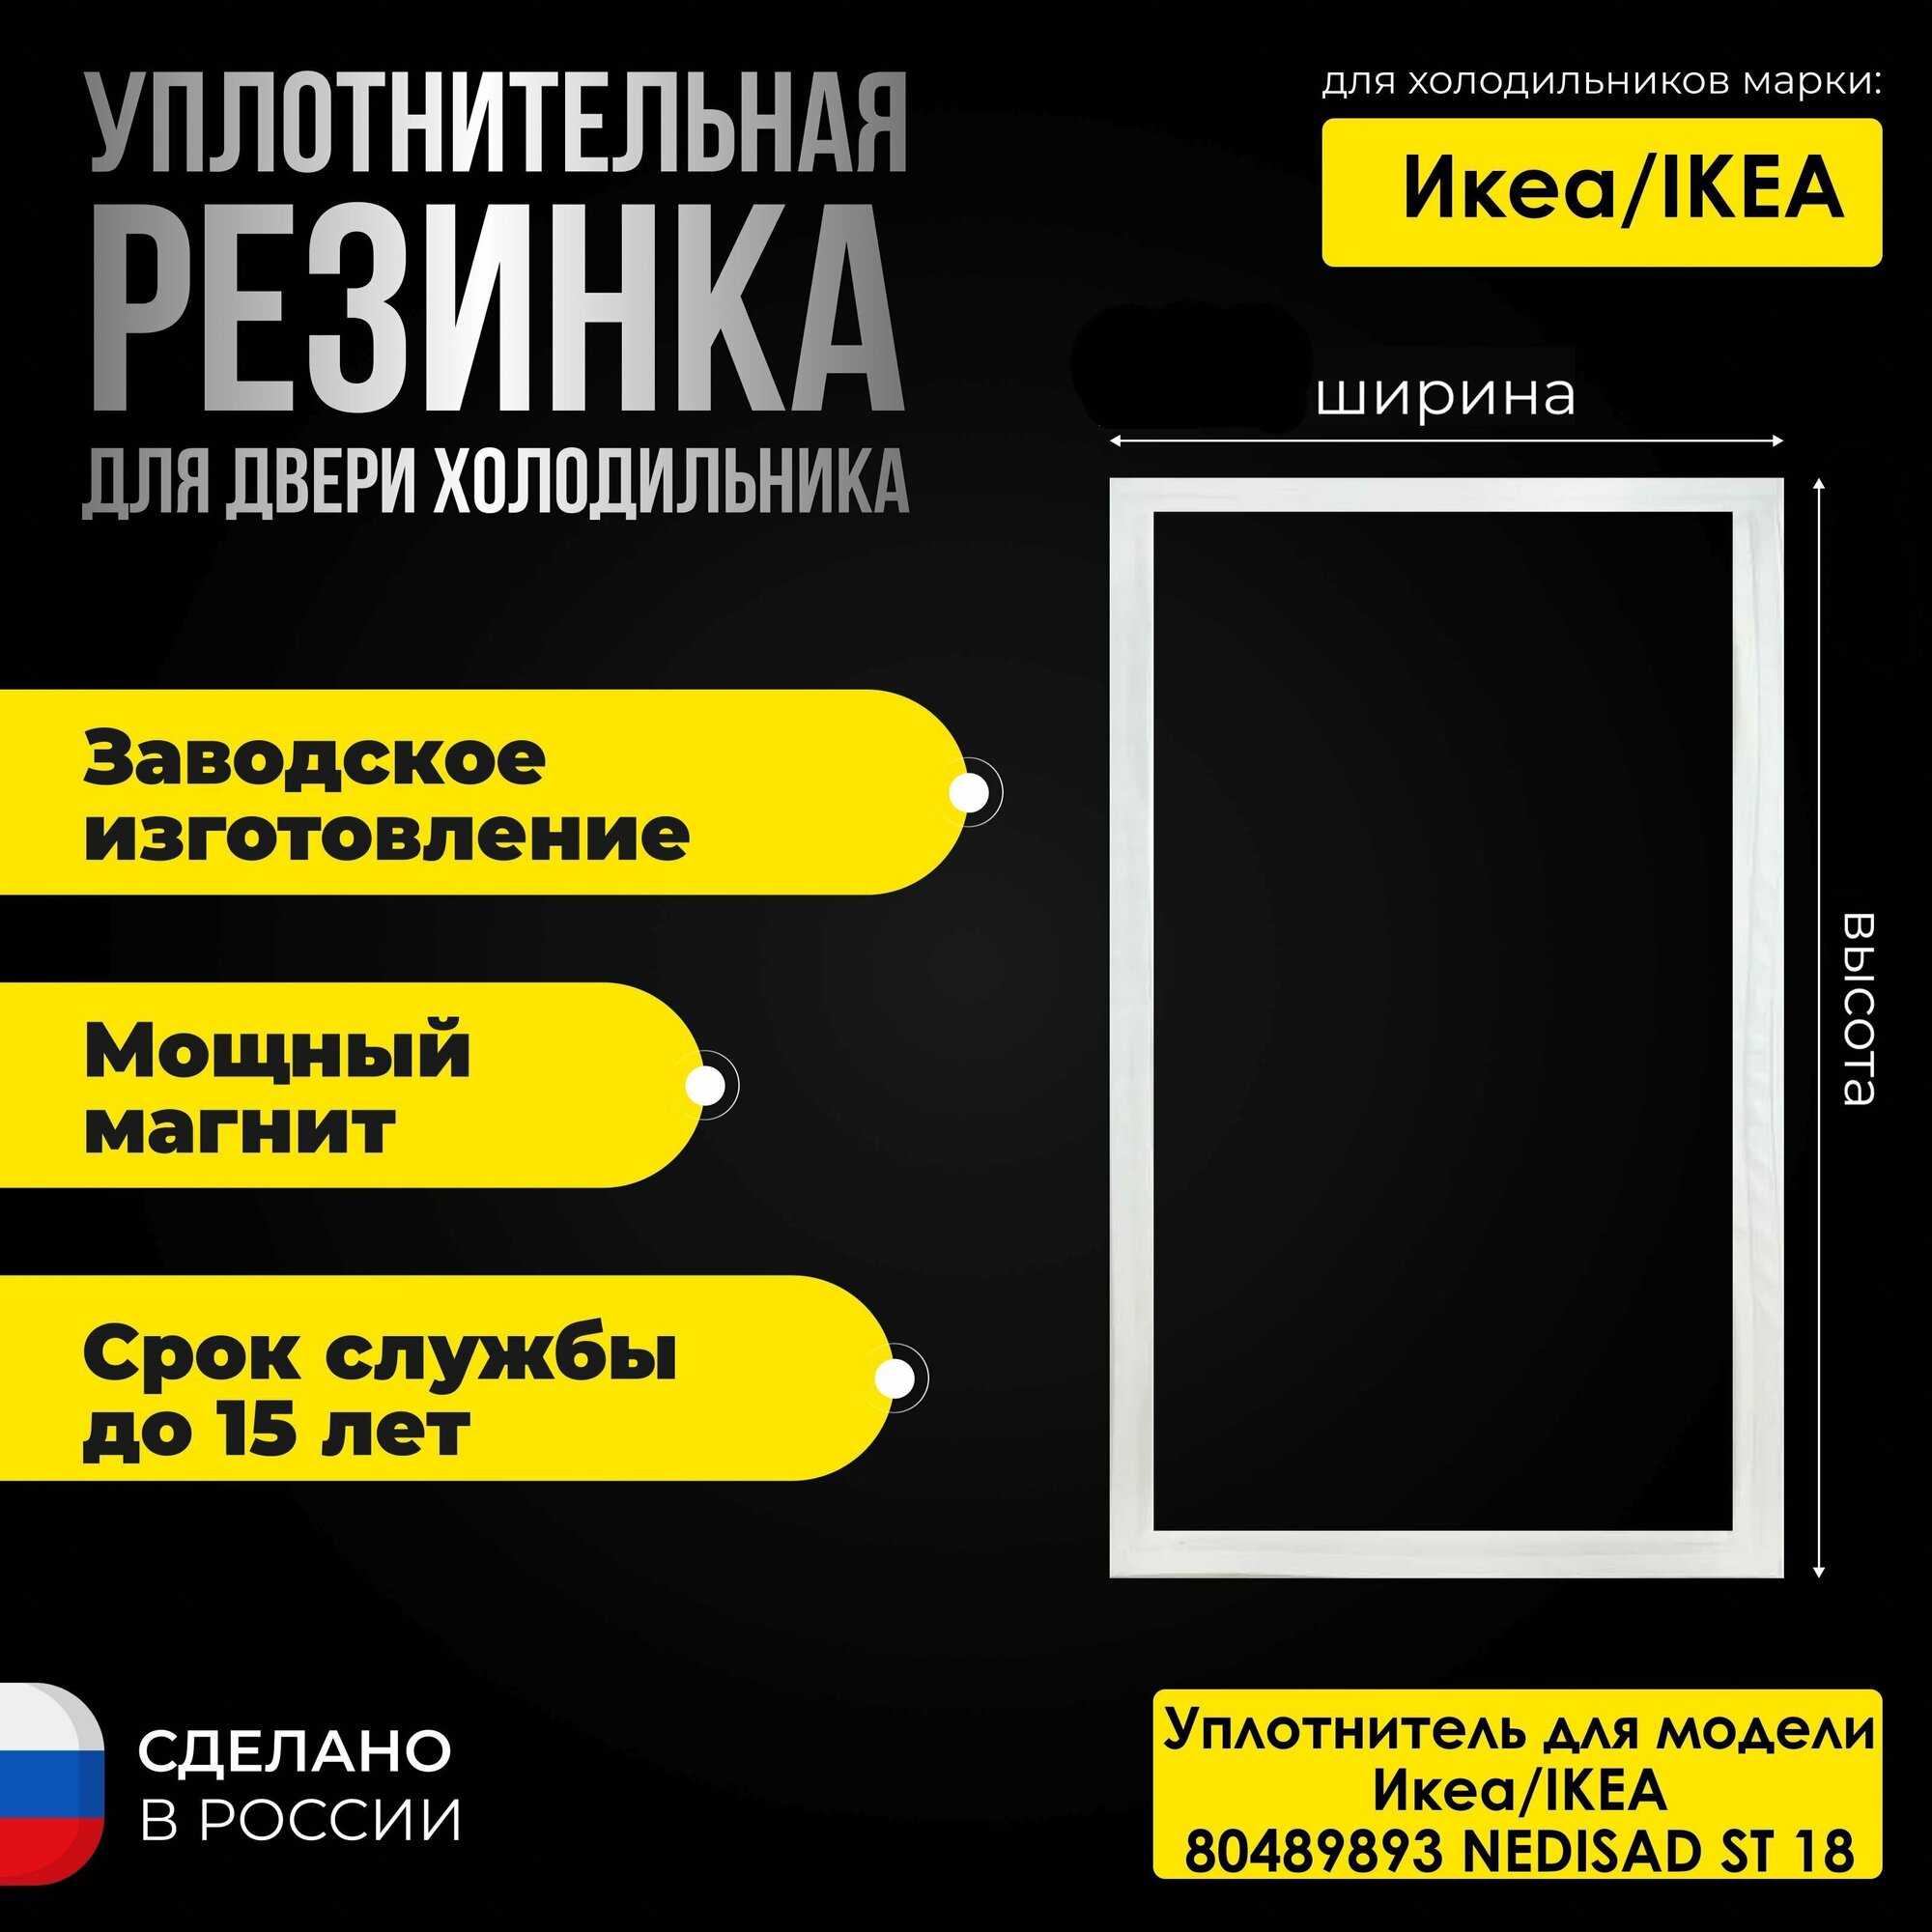 Уплотнитель для двери холодильника IKEA/Икеа NEDISAD ST 18 80489893 / 869991627480. На морозильную камеру.